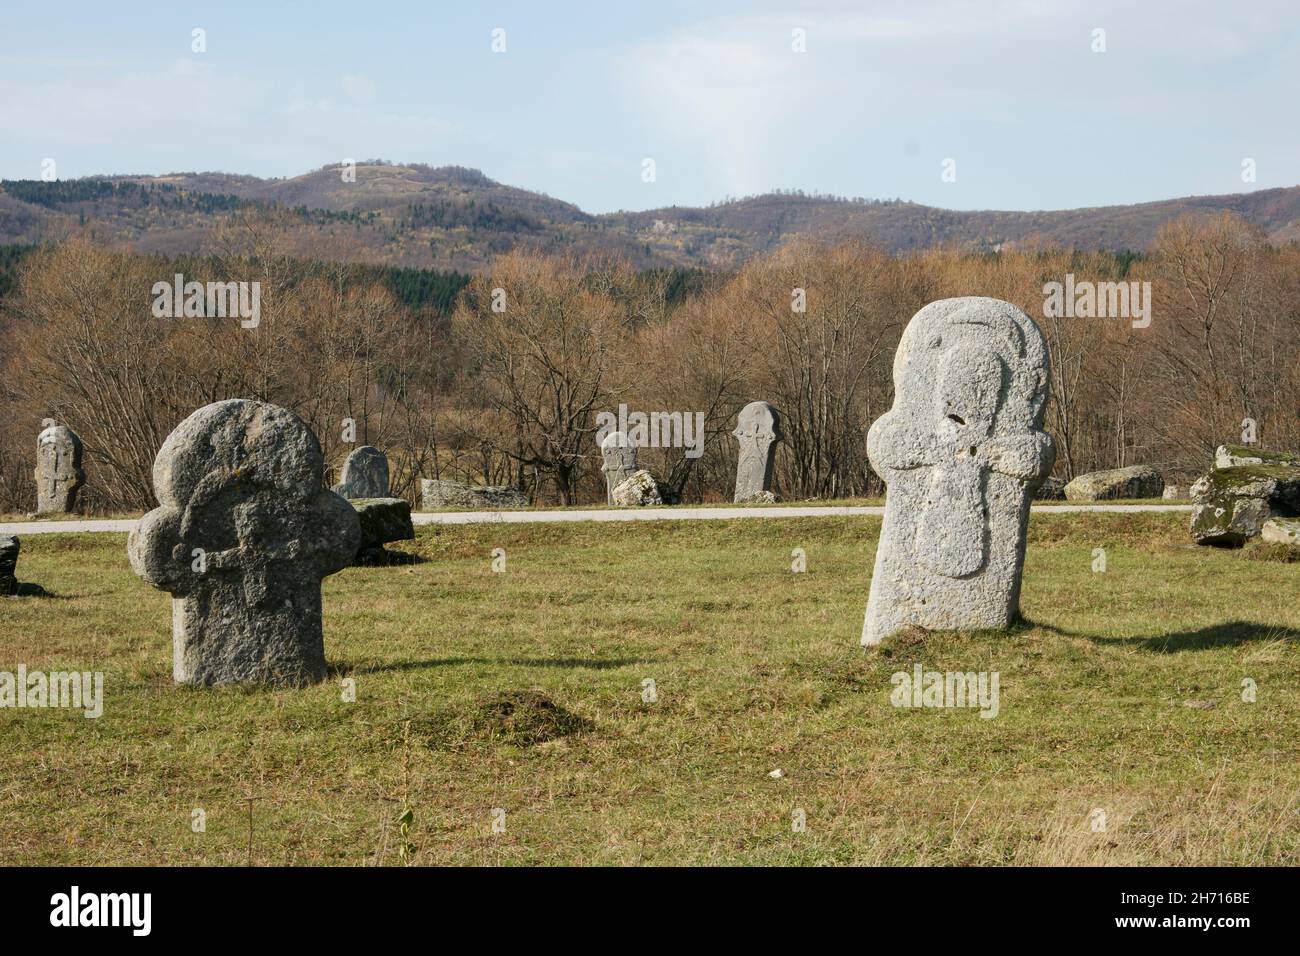 Nekropa sa stećcima Maculje : cimetière avec pierres tombales monumentales médieavales (Rostovo, Novi Travnik, Bosnie-Herzégovine), patrimoine culturel mondial Banque D'Images